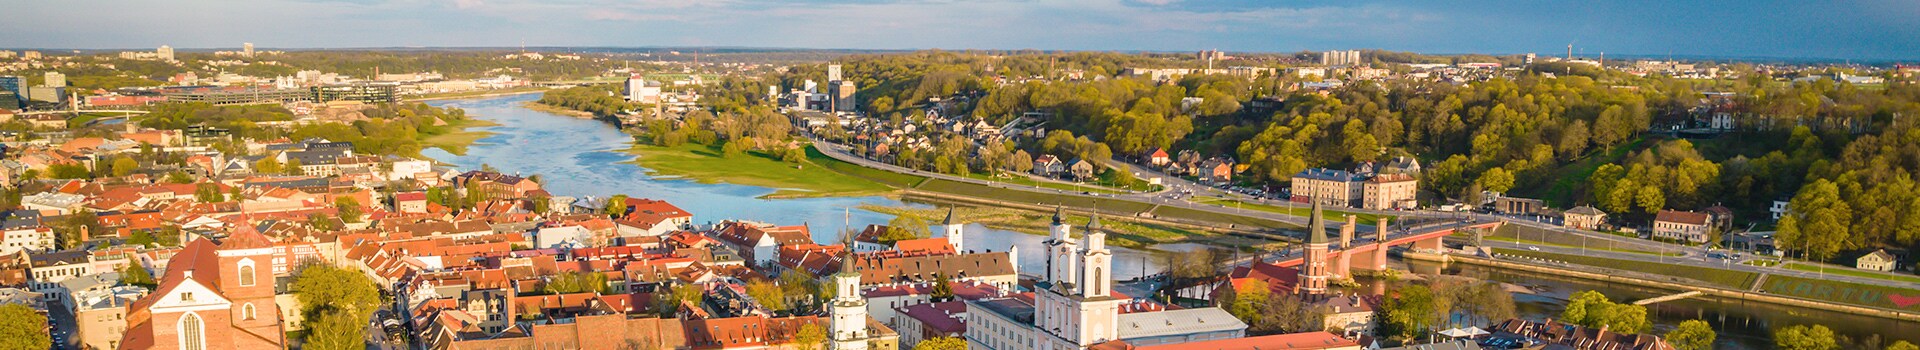 Maiorca - Kaunas